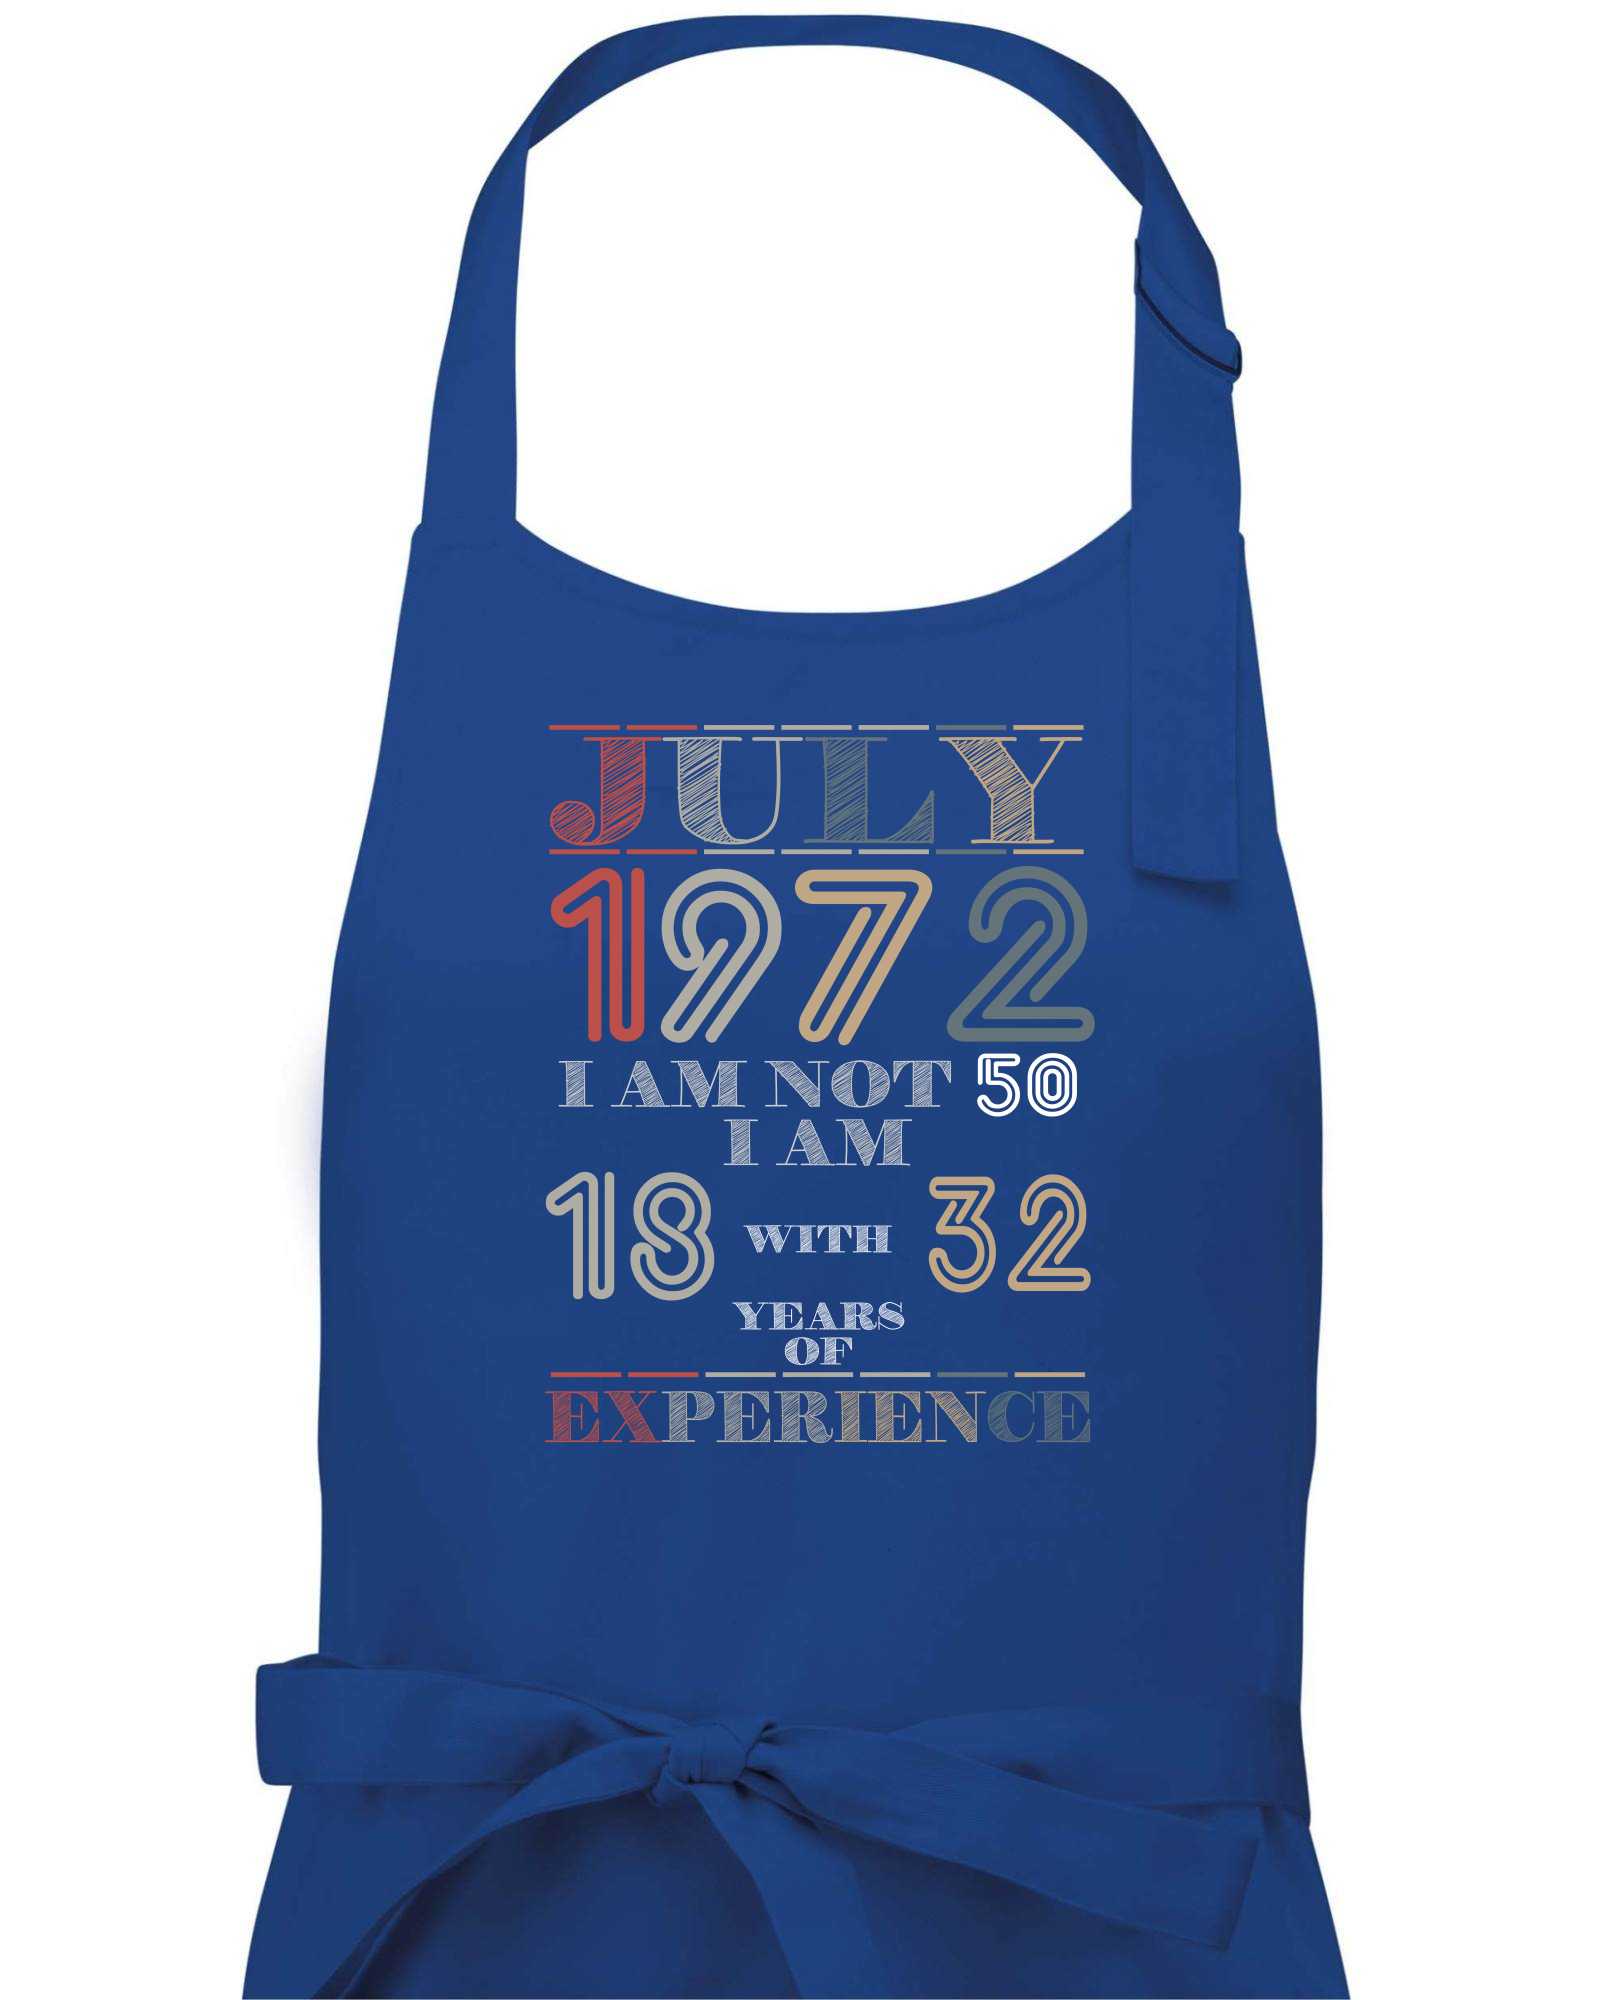 Narozeniny experience 1972 July - Zástěra na vaření